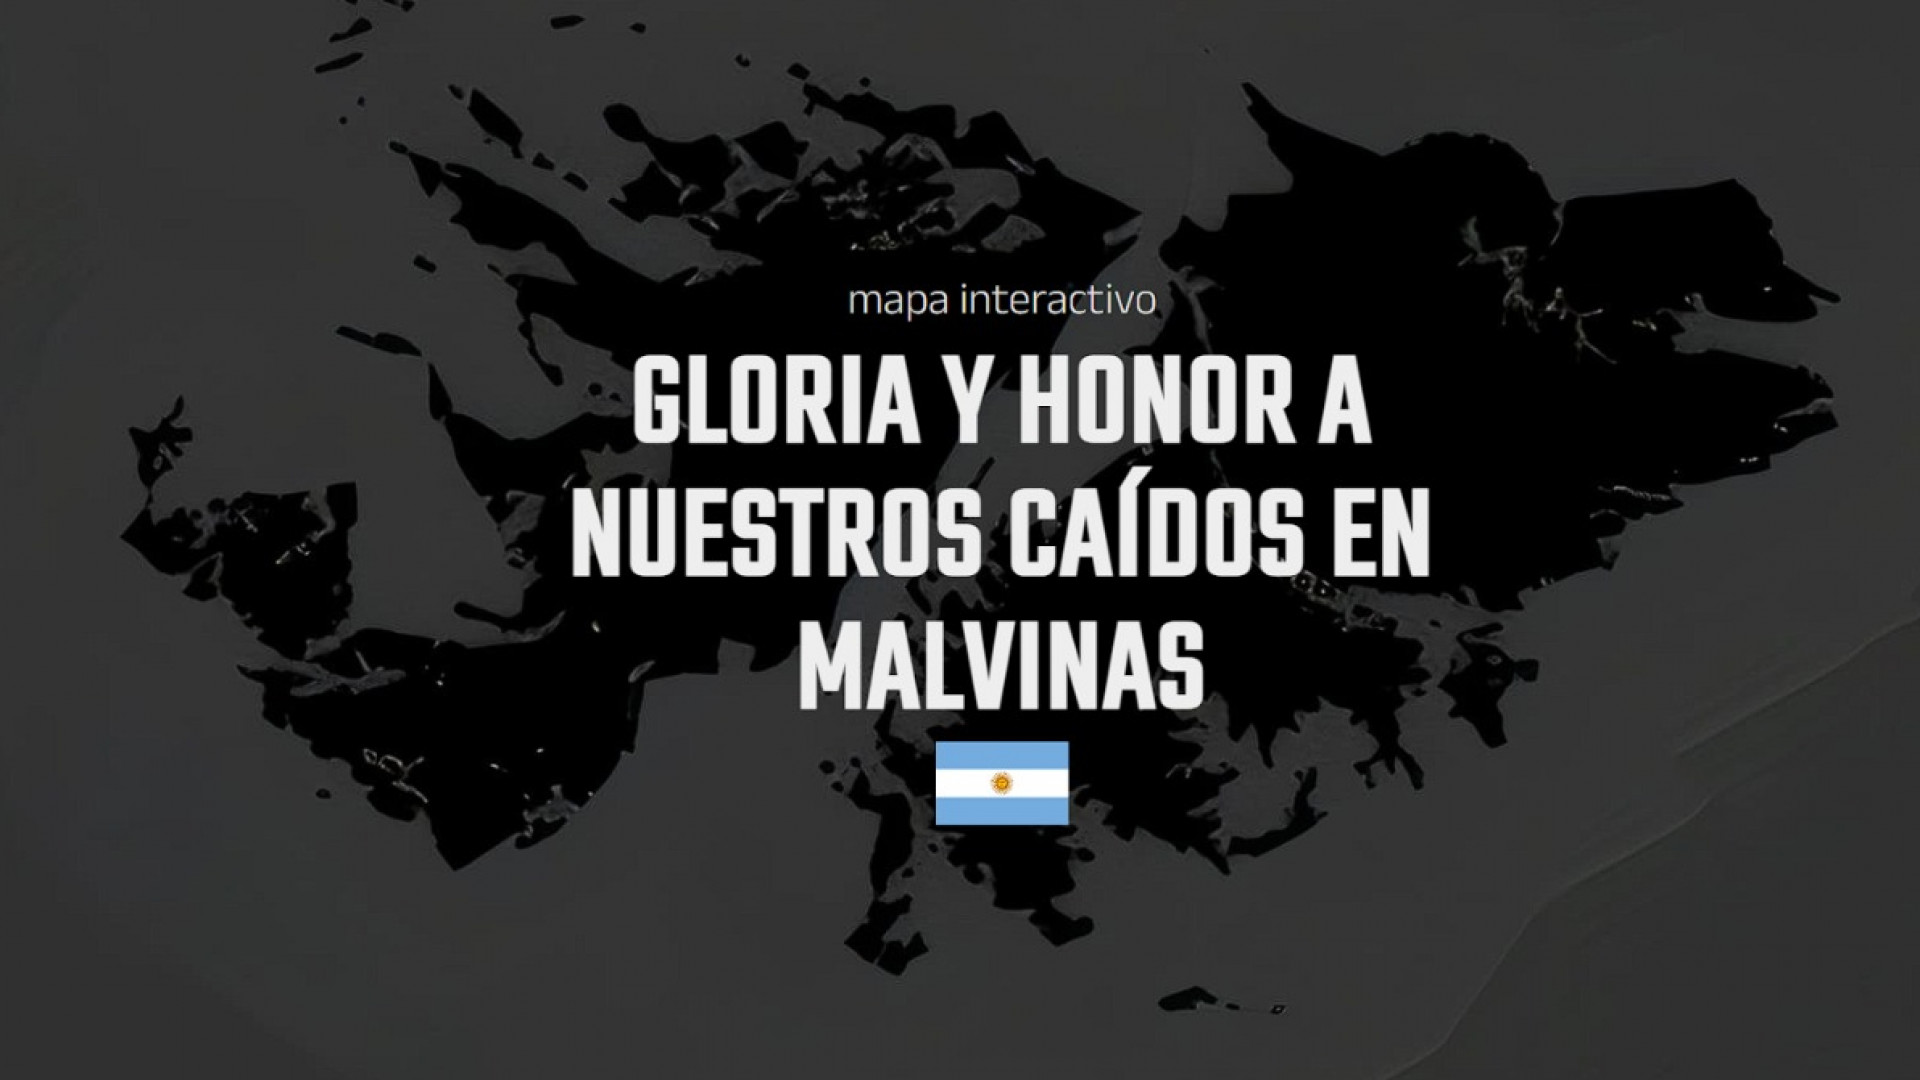 noticiaspuertosantacruz.com.ar - Imagen extraida de: https://argentina.gob.ar/noticias/honrar-los-heroes-de-malvinas